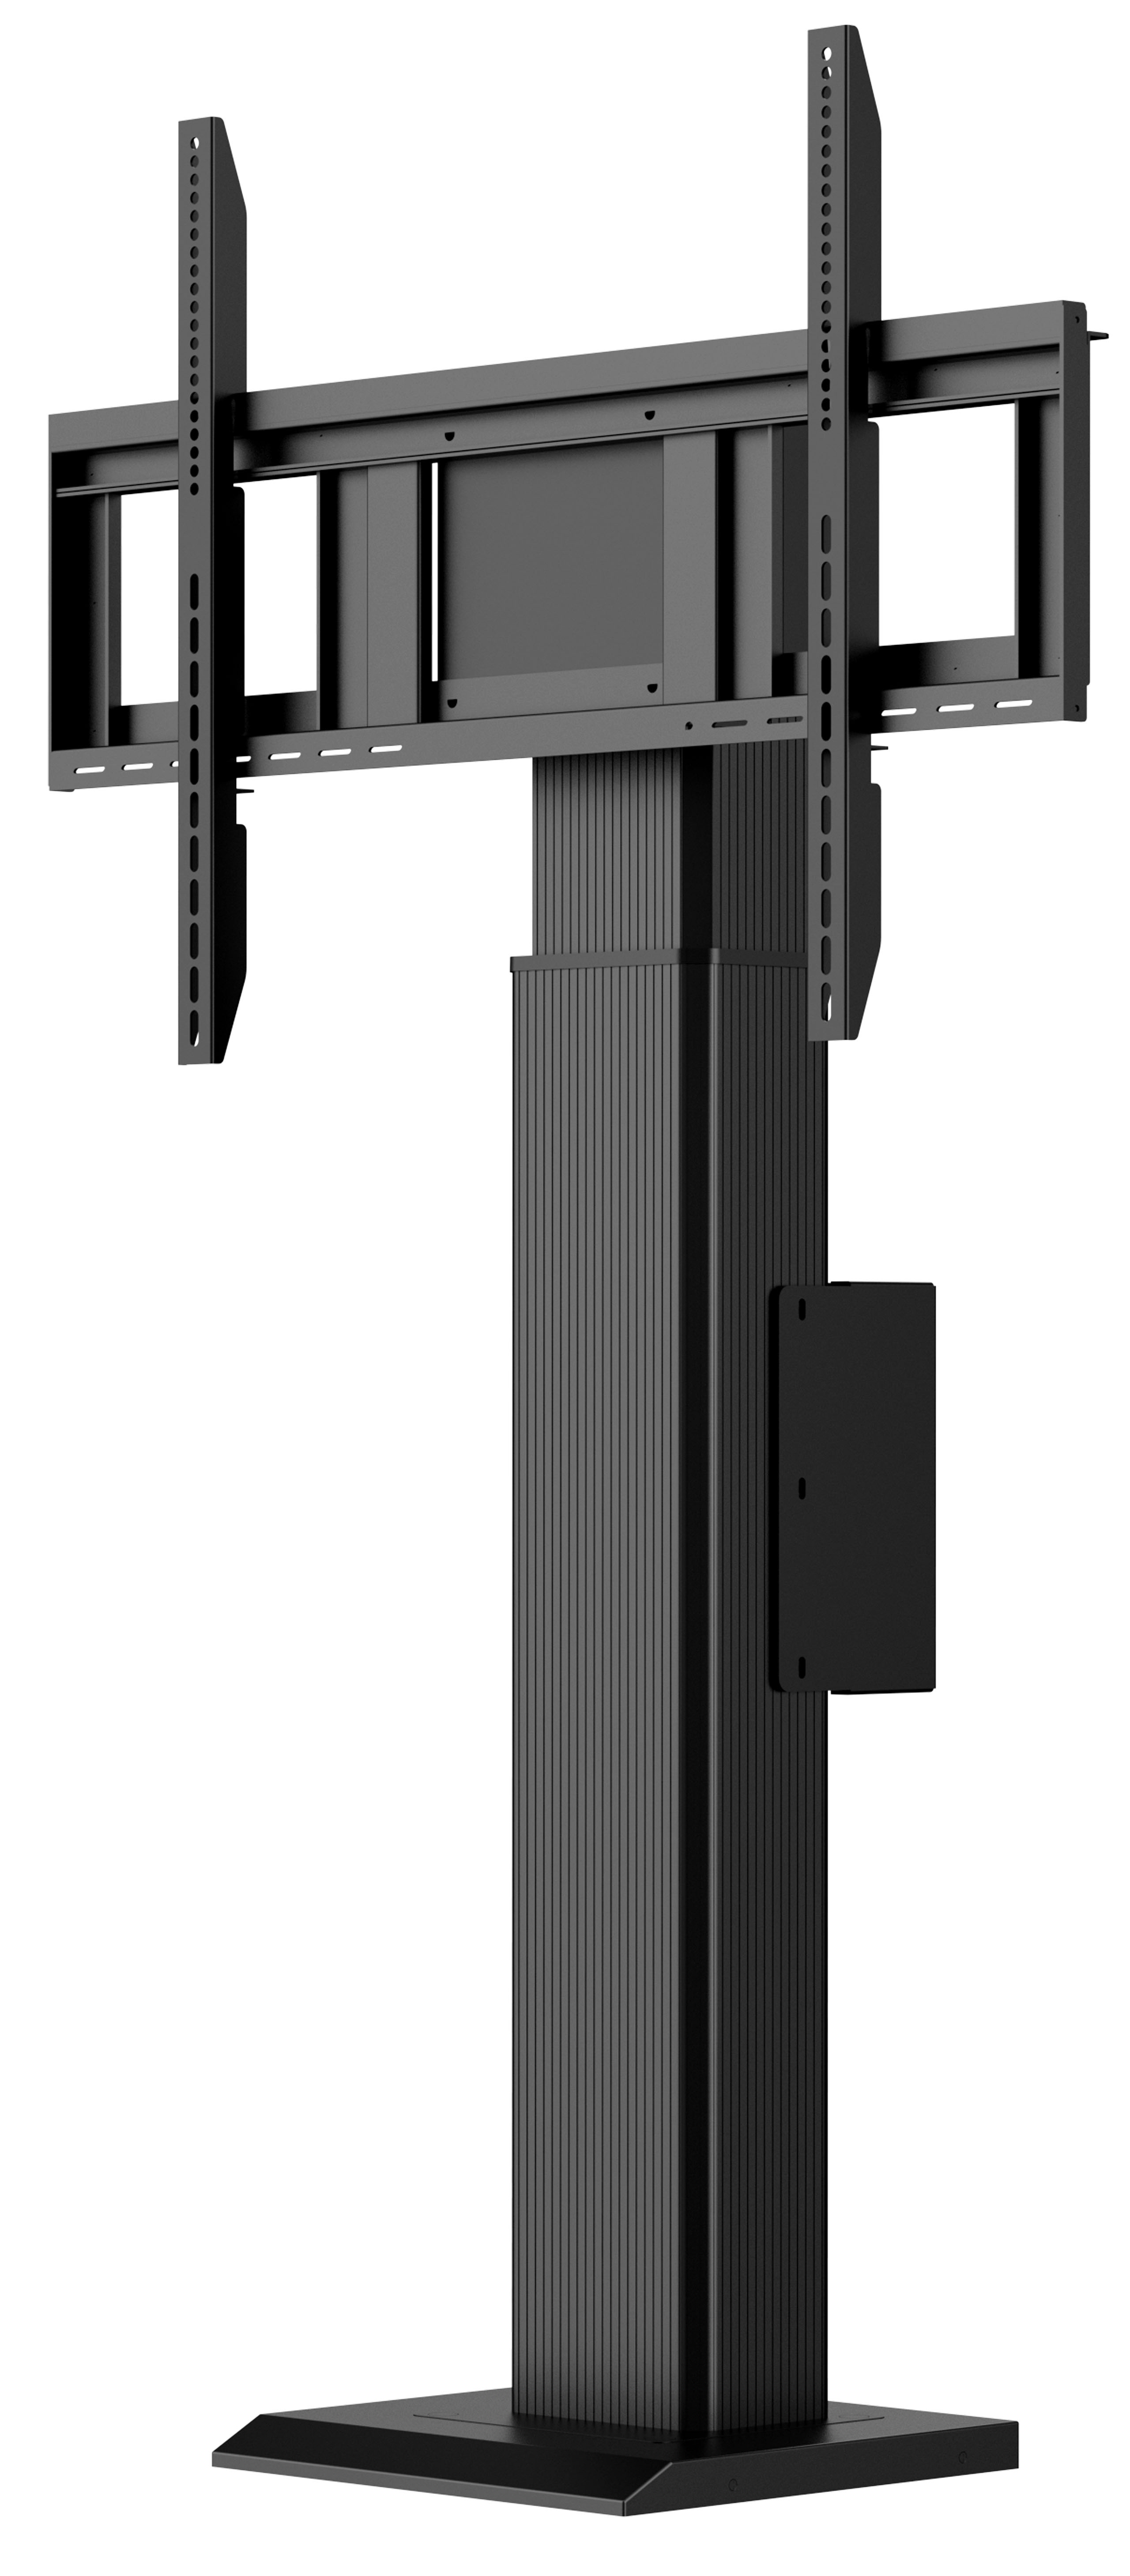 iiyama MD WLIFT1021-B1 - motorised floor wall mount - 55-86 inch - VESA 800x600mm - up to 100kg